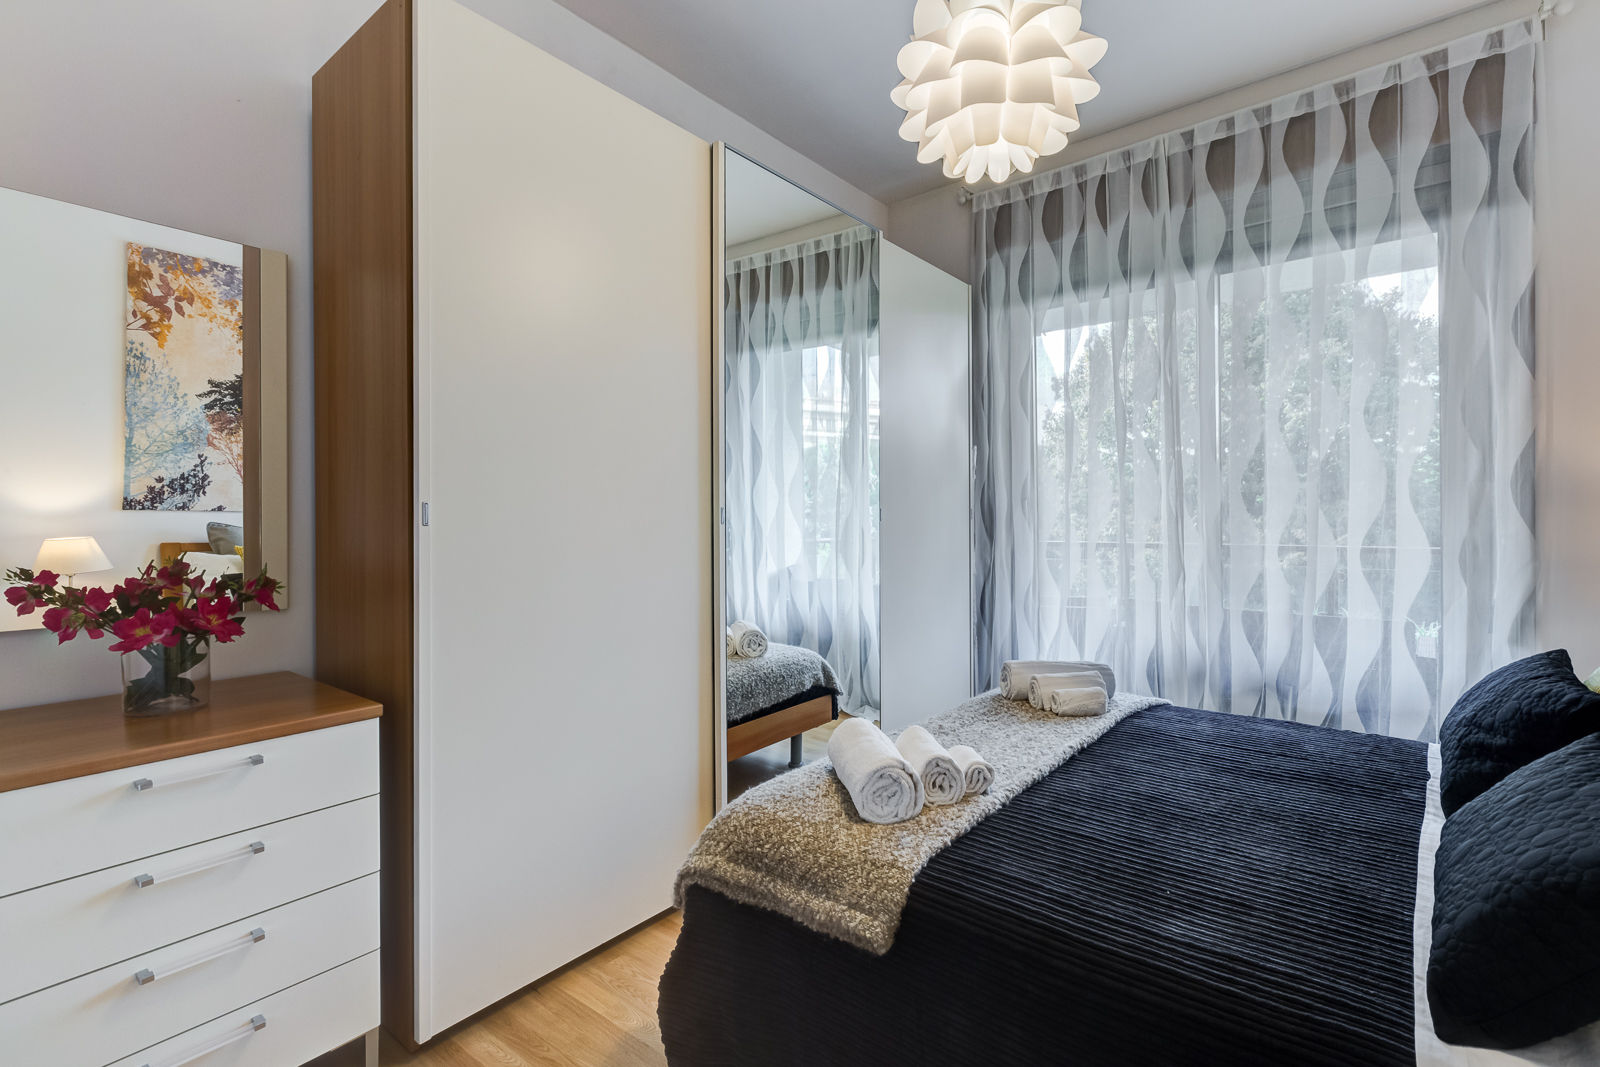 Appartamento Laurentina - Roma, Luca Tranquilli - Fotografo Luca Tranquilli - Fotografo Modern Bedroom